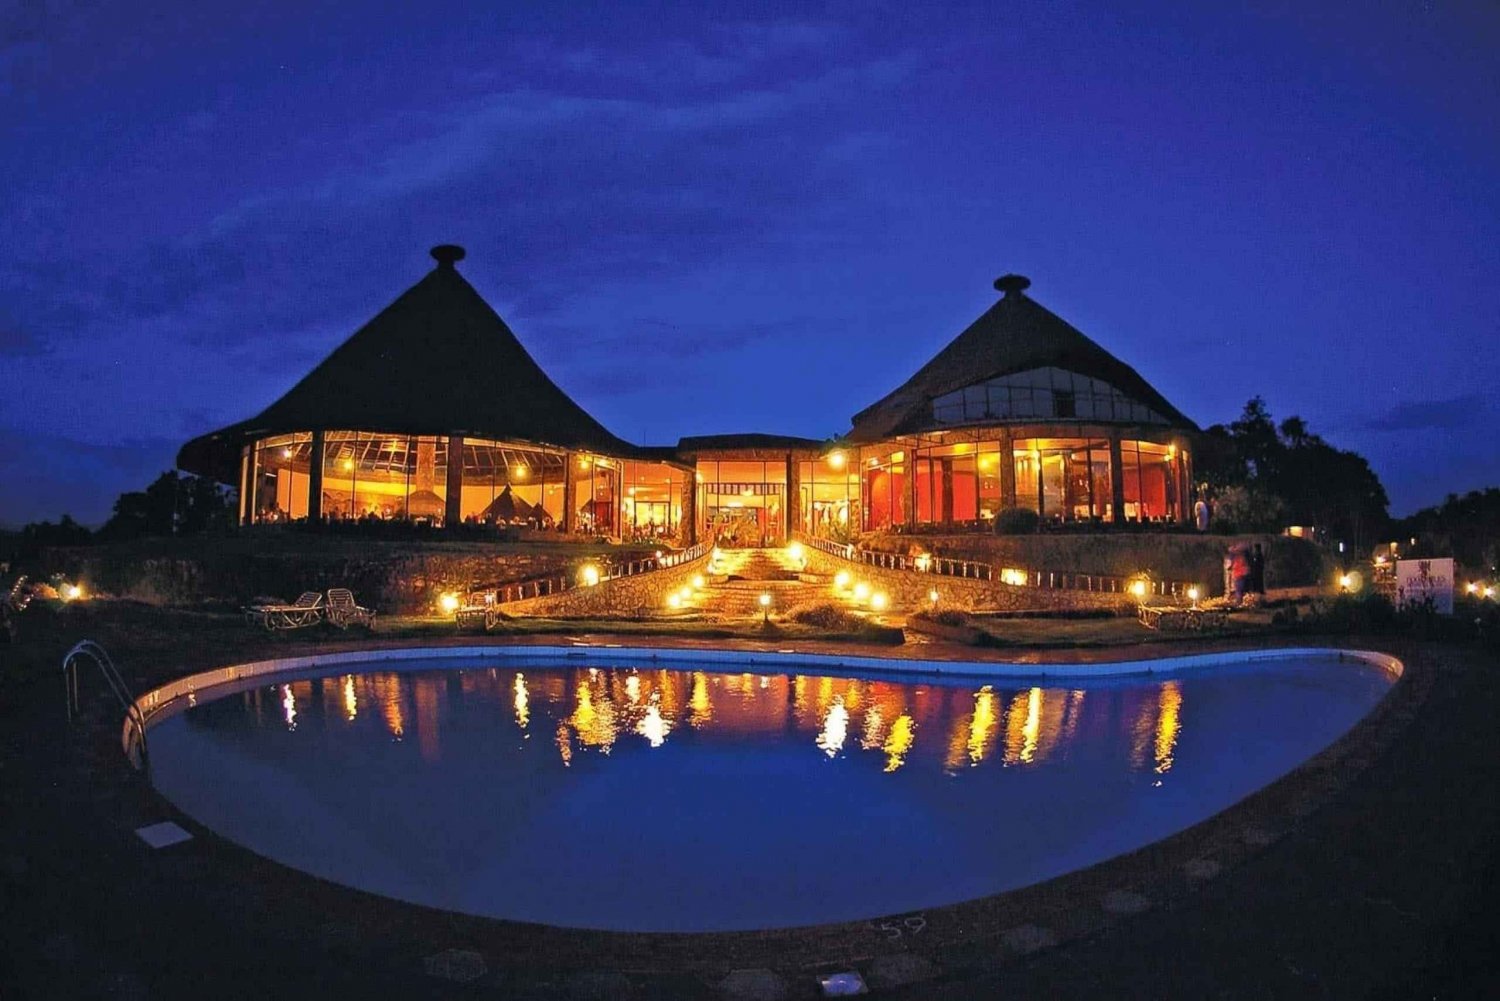 Safari di 3 giorni nel Maasai Mara con Sopa Luxury Lodge